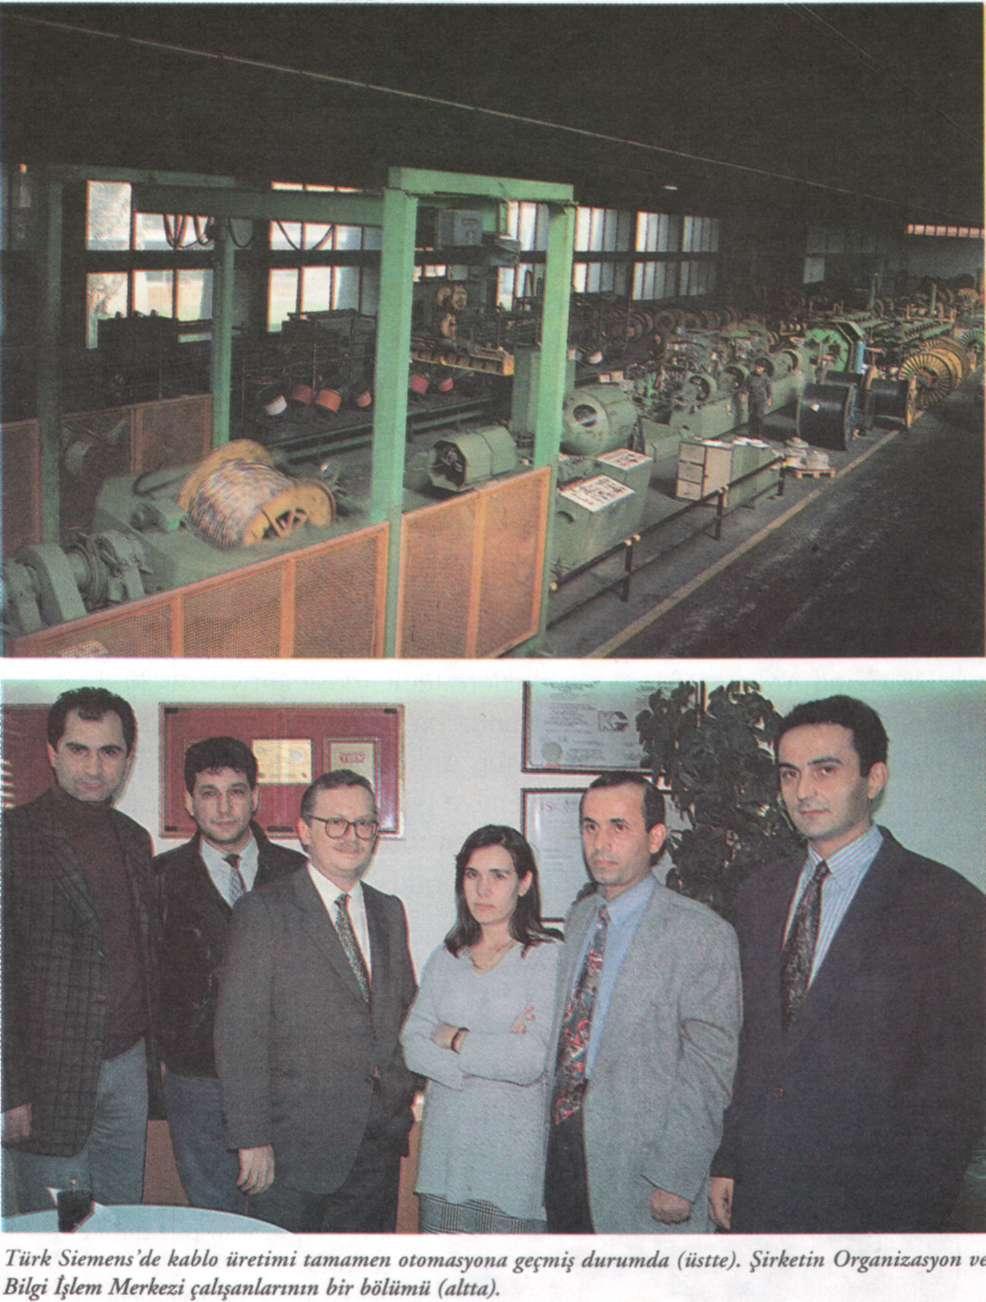 Türk Siemens'te bilgisayarlaşmanın 1980'li yılların ortalarında başladığını ve bu konuda Almanya Siemens ile paralel bir yapılanmaya gidildiğini belirten Altay, Siemens'e özgü özgü Sicomp M76